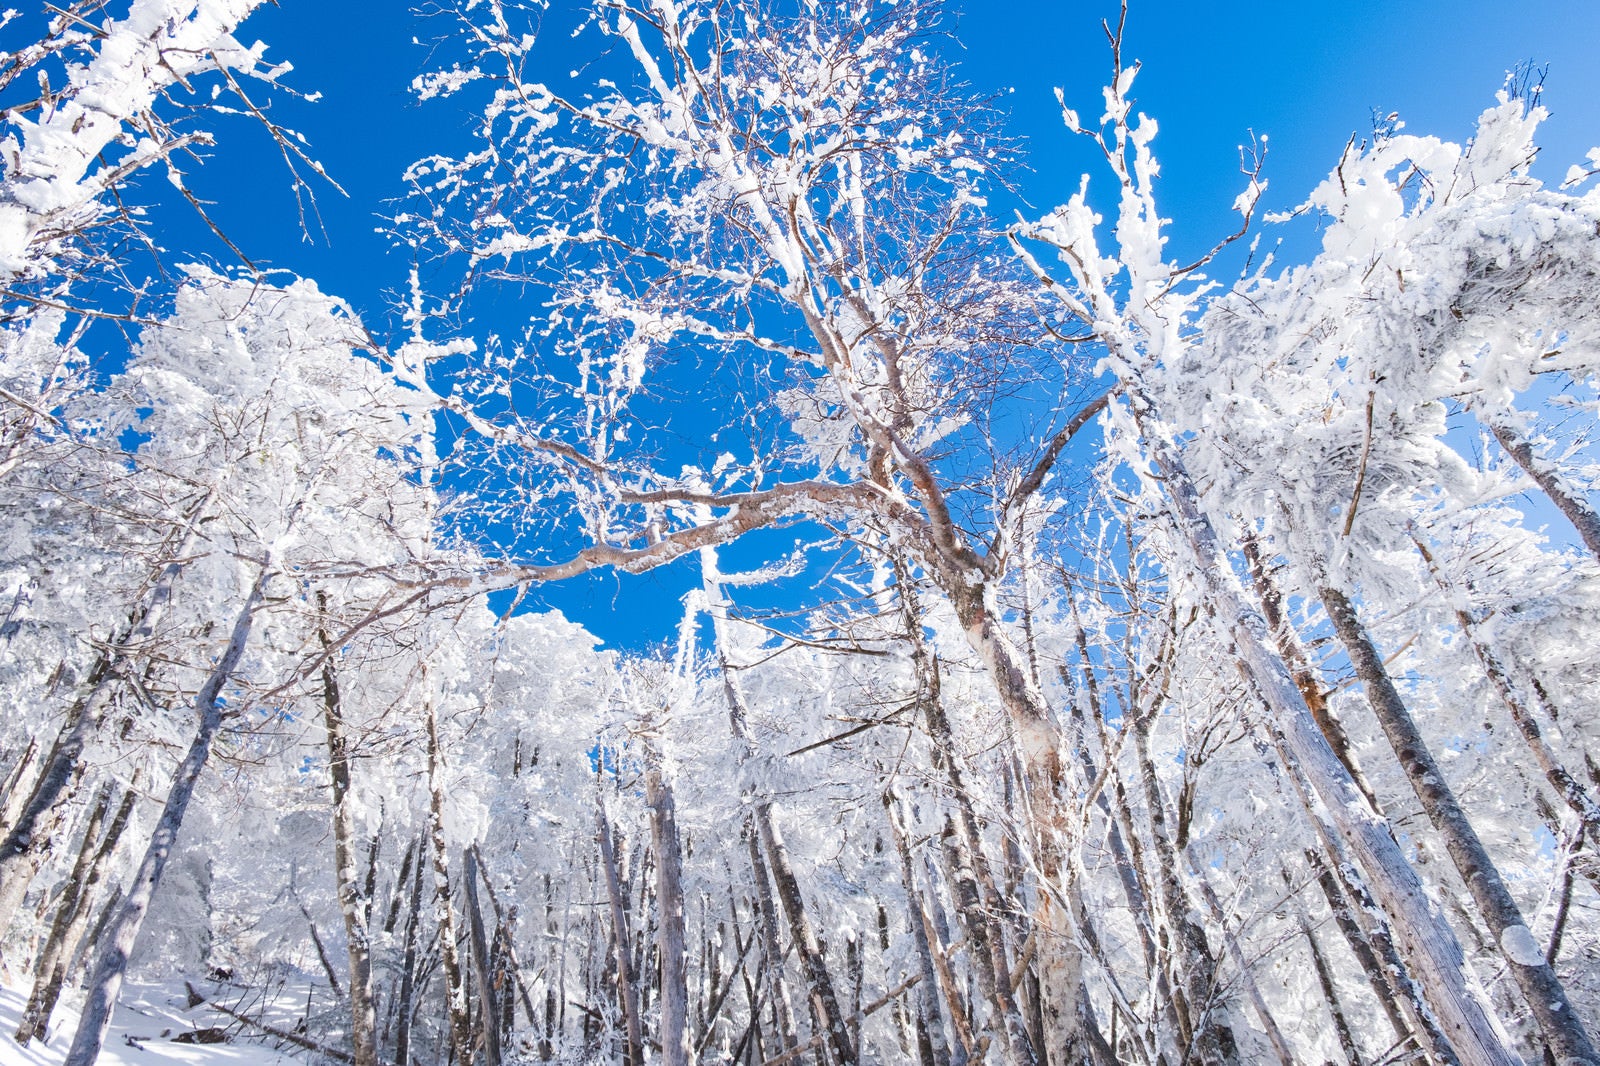 「蓼科山の森林限界付近の霧氷」の写真